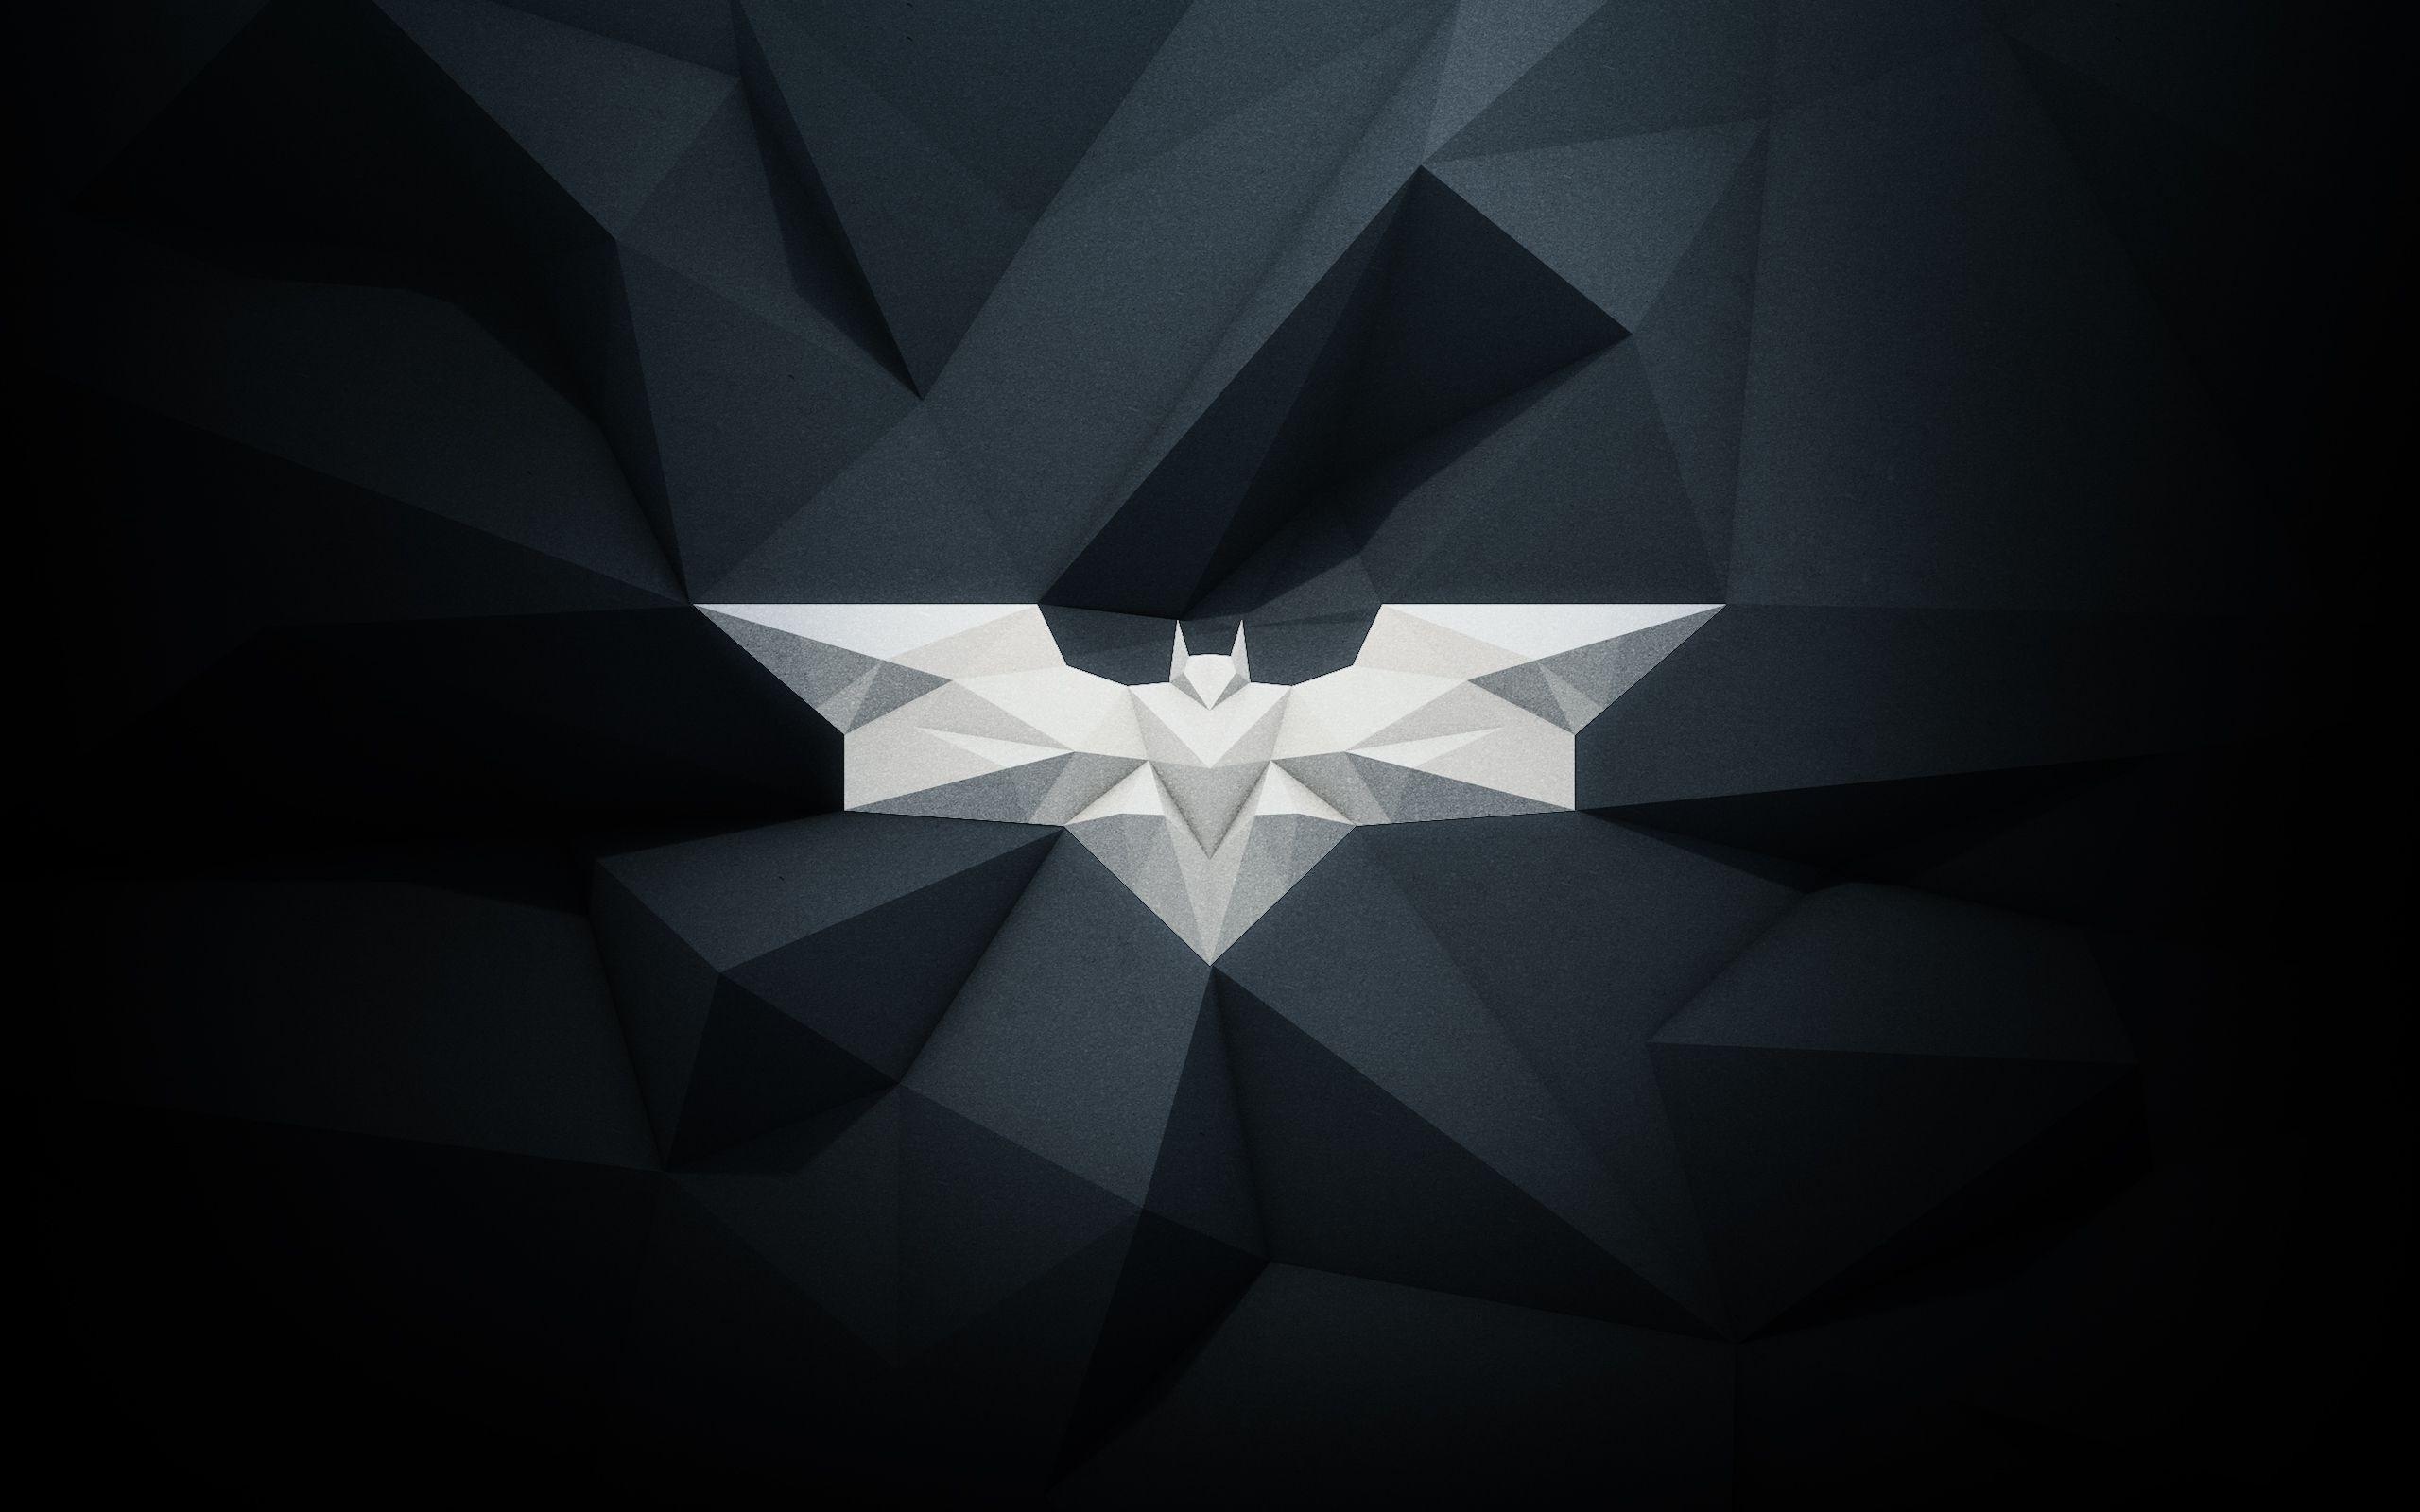 多边形蝙蝠侠标志壁纸750x1334分辨率下载,多边形蝙蝠侠标志壁纸,高清